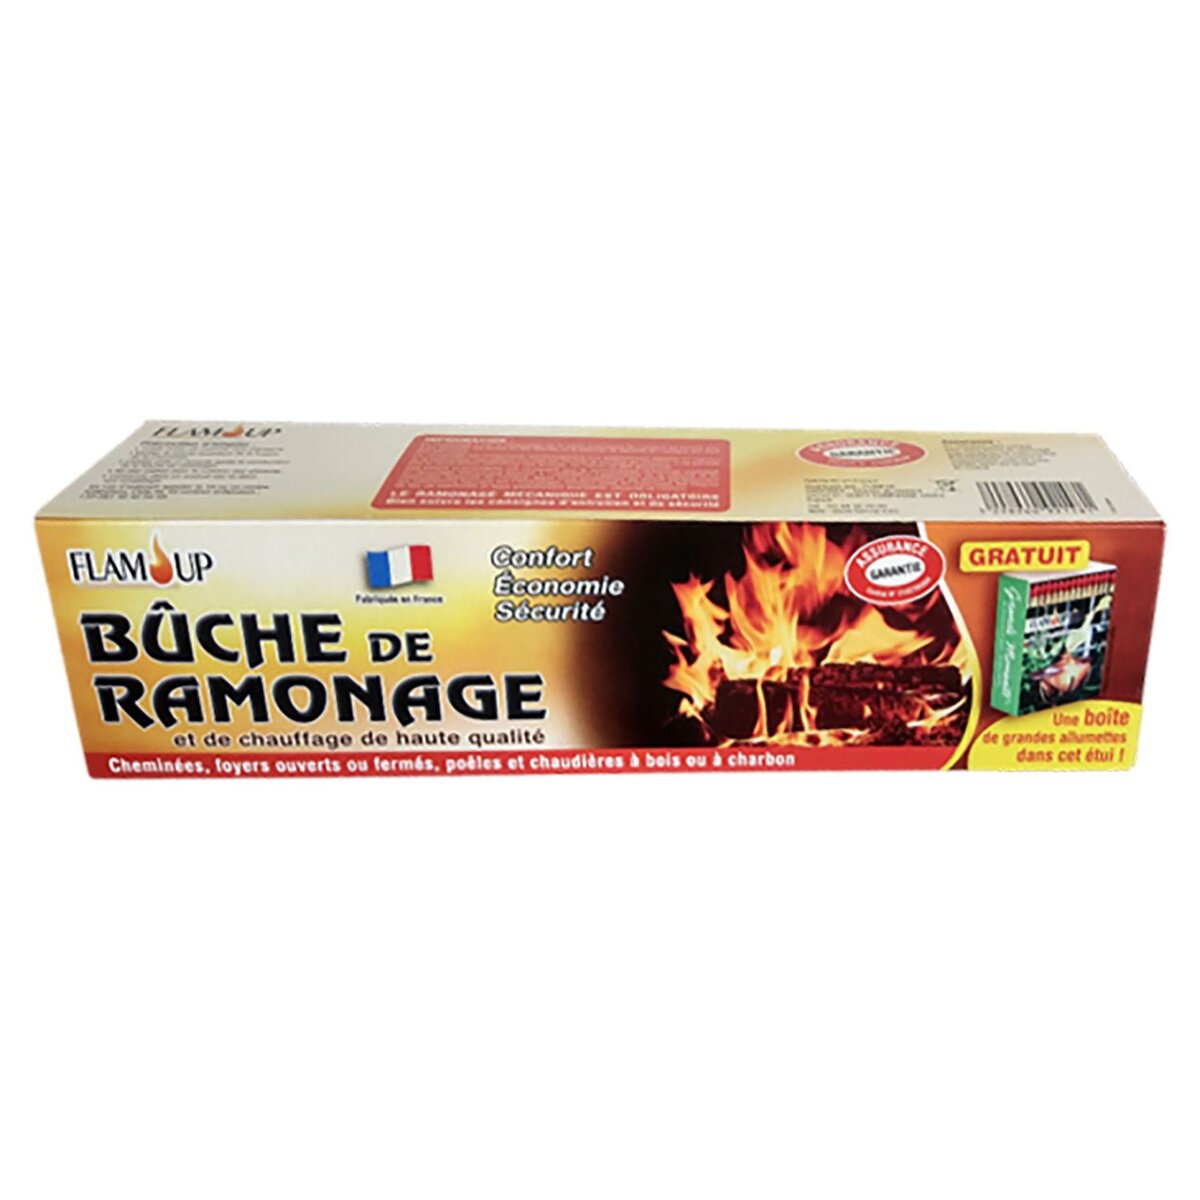 FLAM'UP Buche de Ramonage